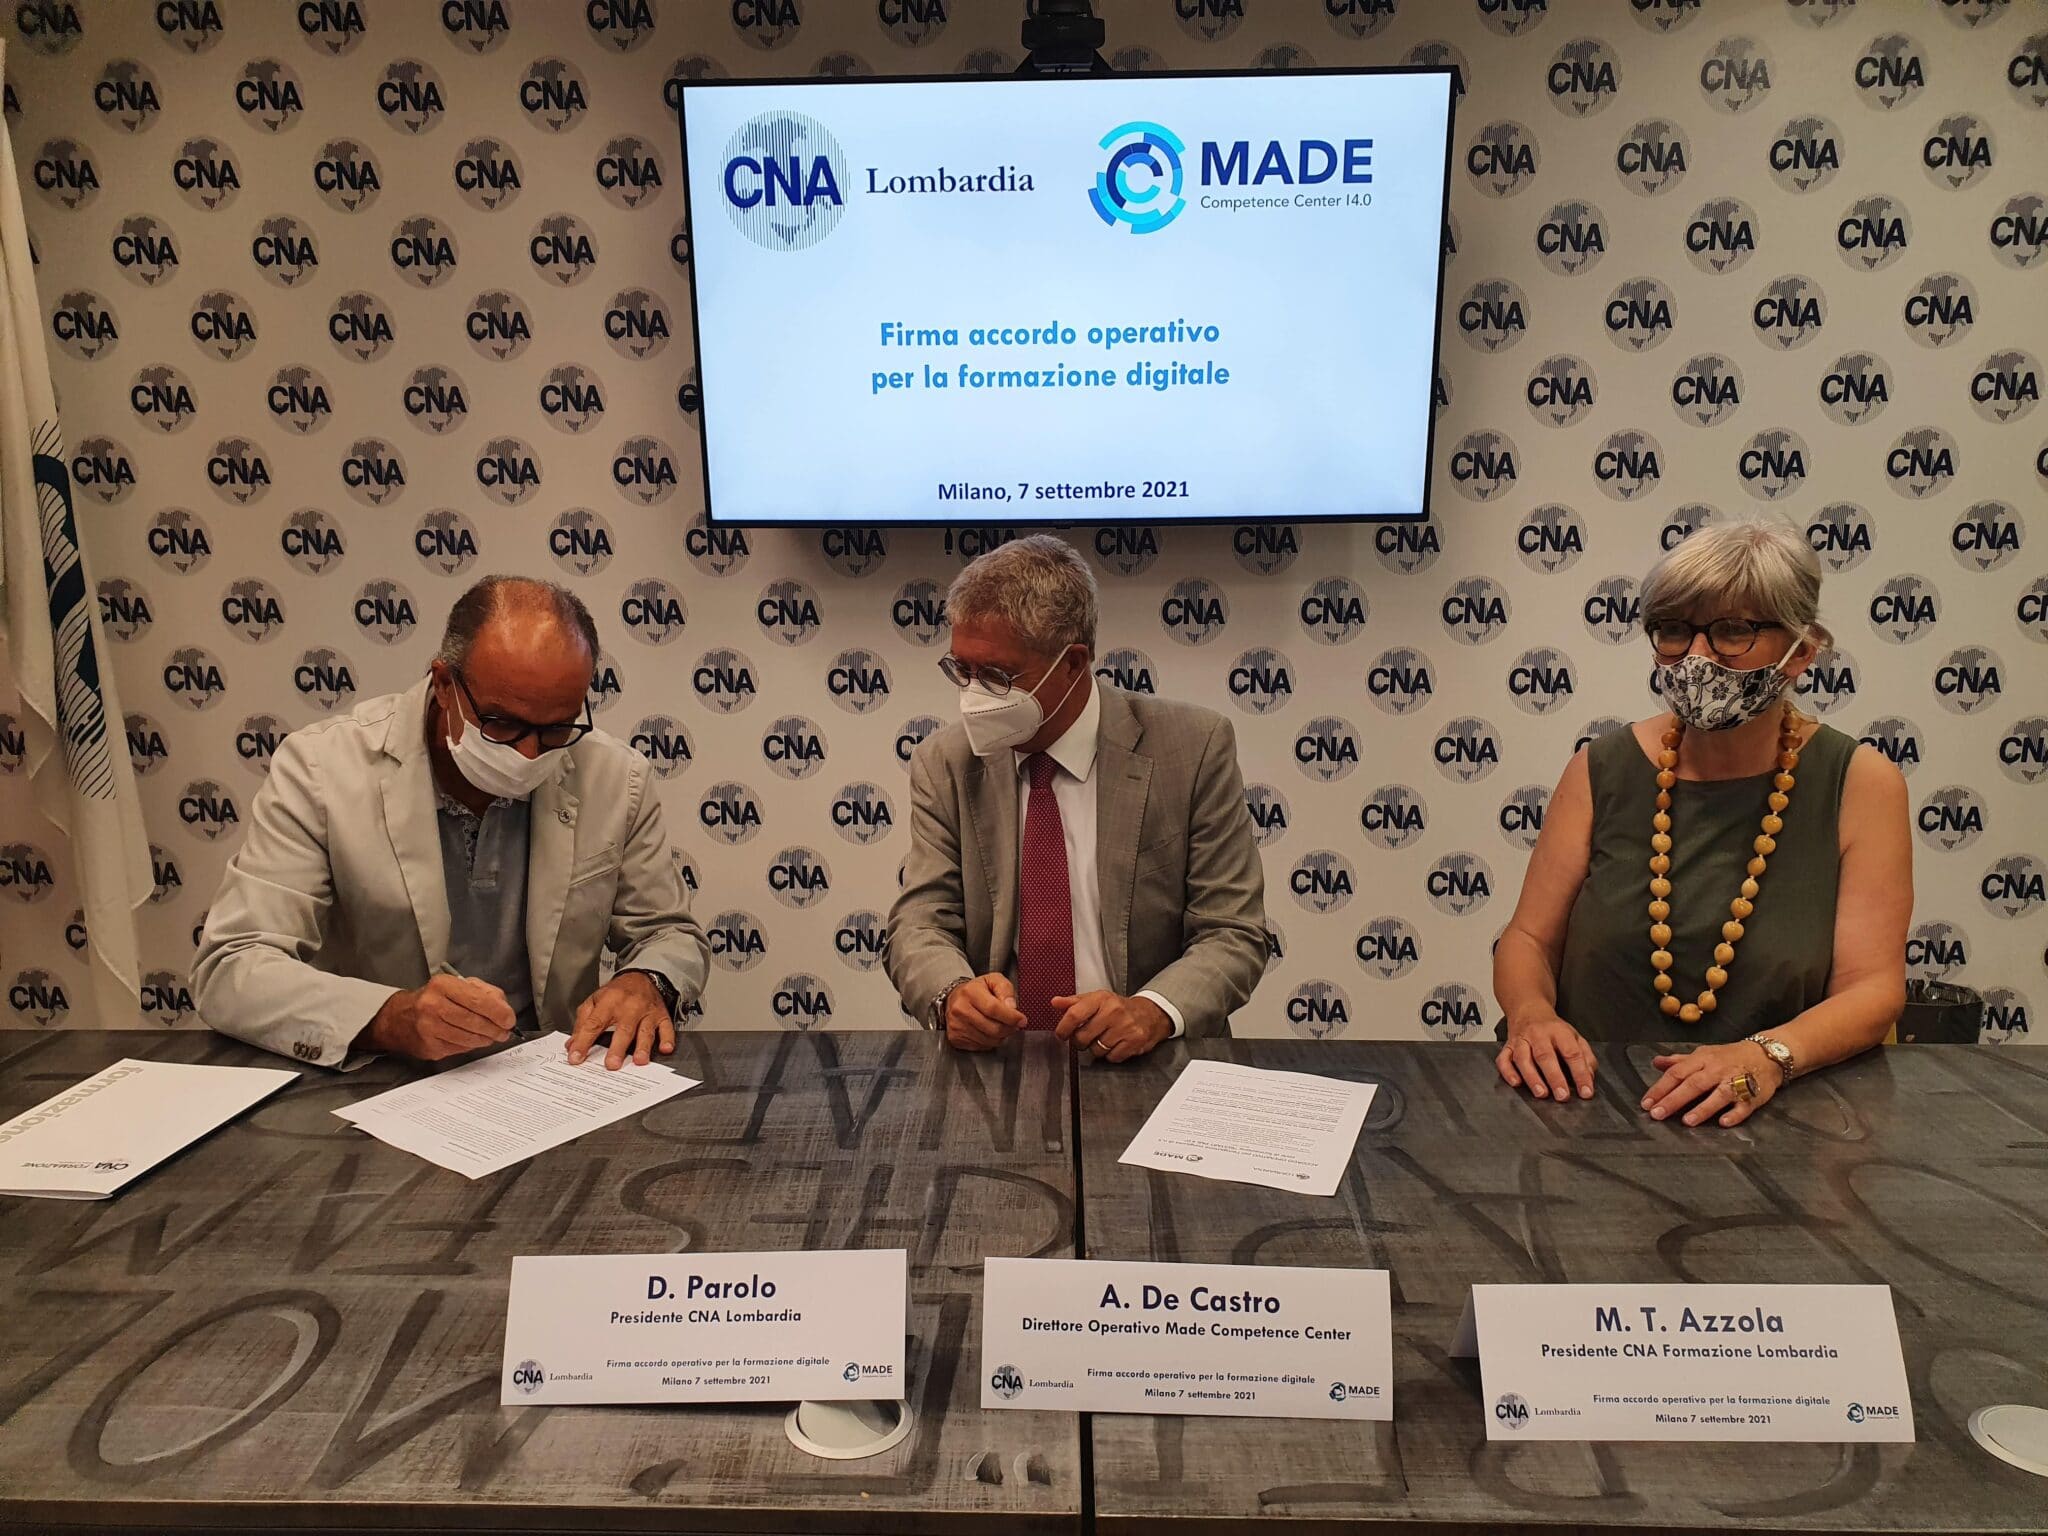 CNA Lombardia e il Competence Center Made siglano un accordo per la formazione digitale delle PMI del territorio